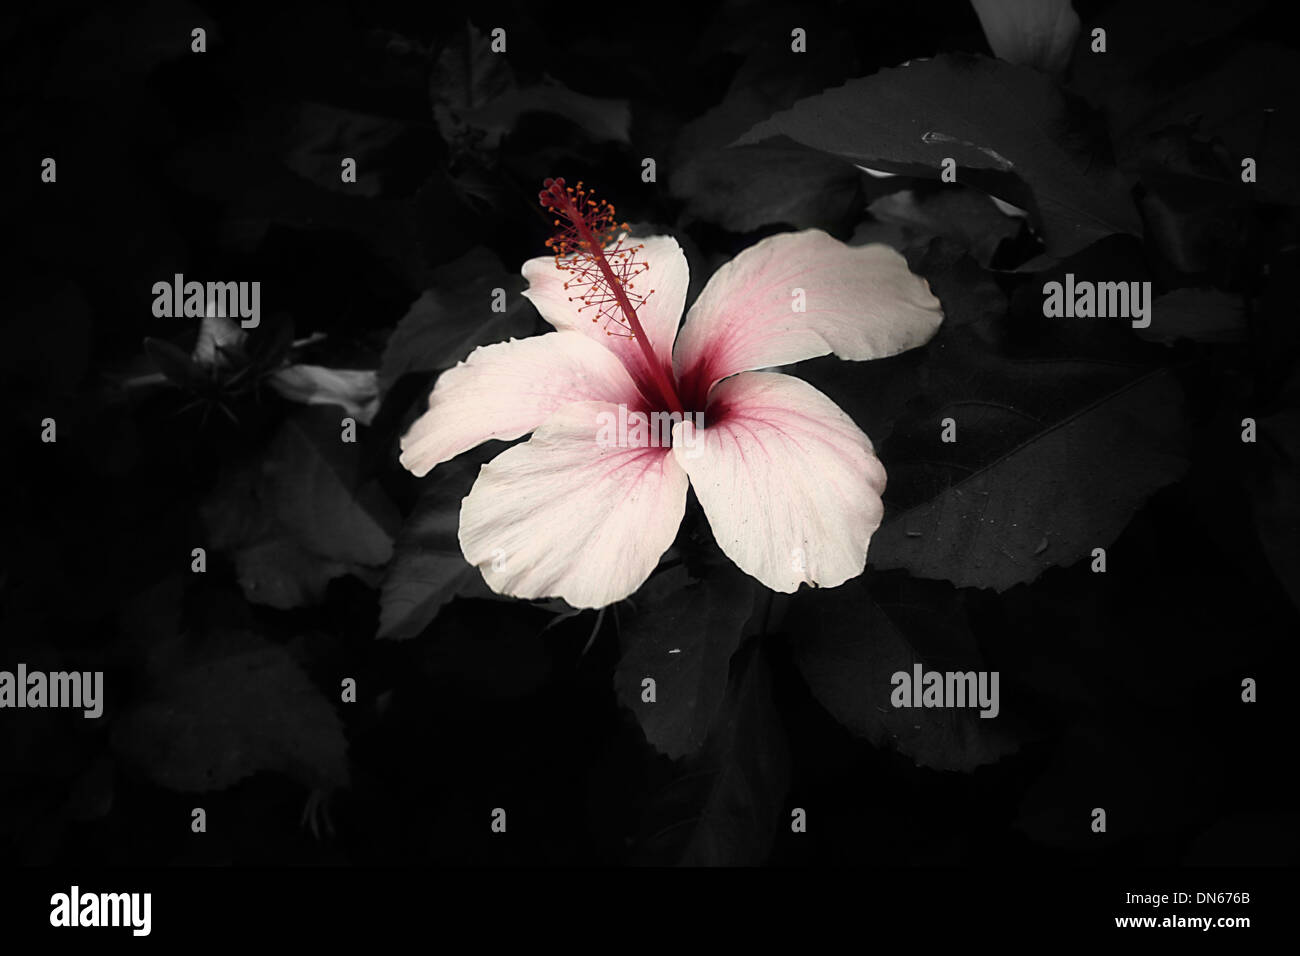 Flor rosa roja oscura hojas en blanco y negro grande Foto de stock